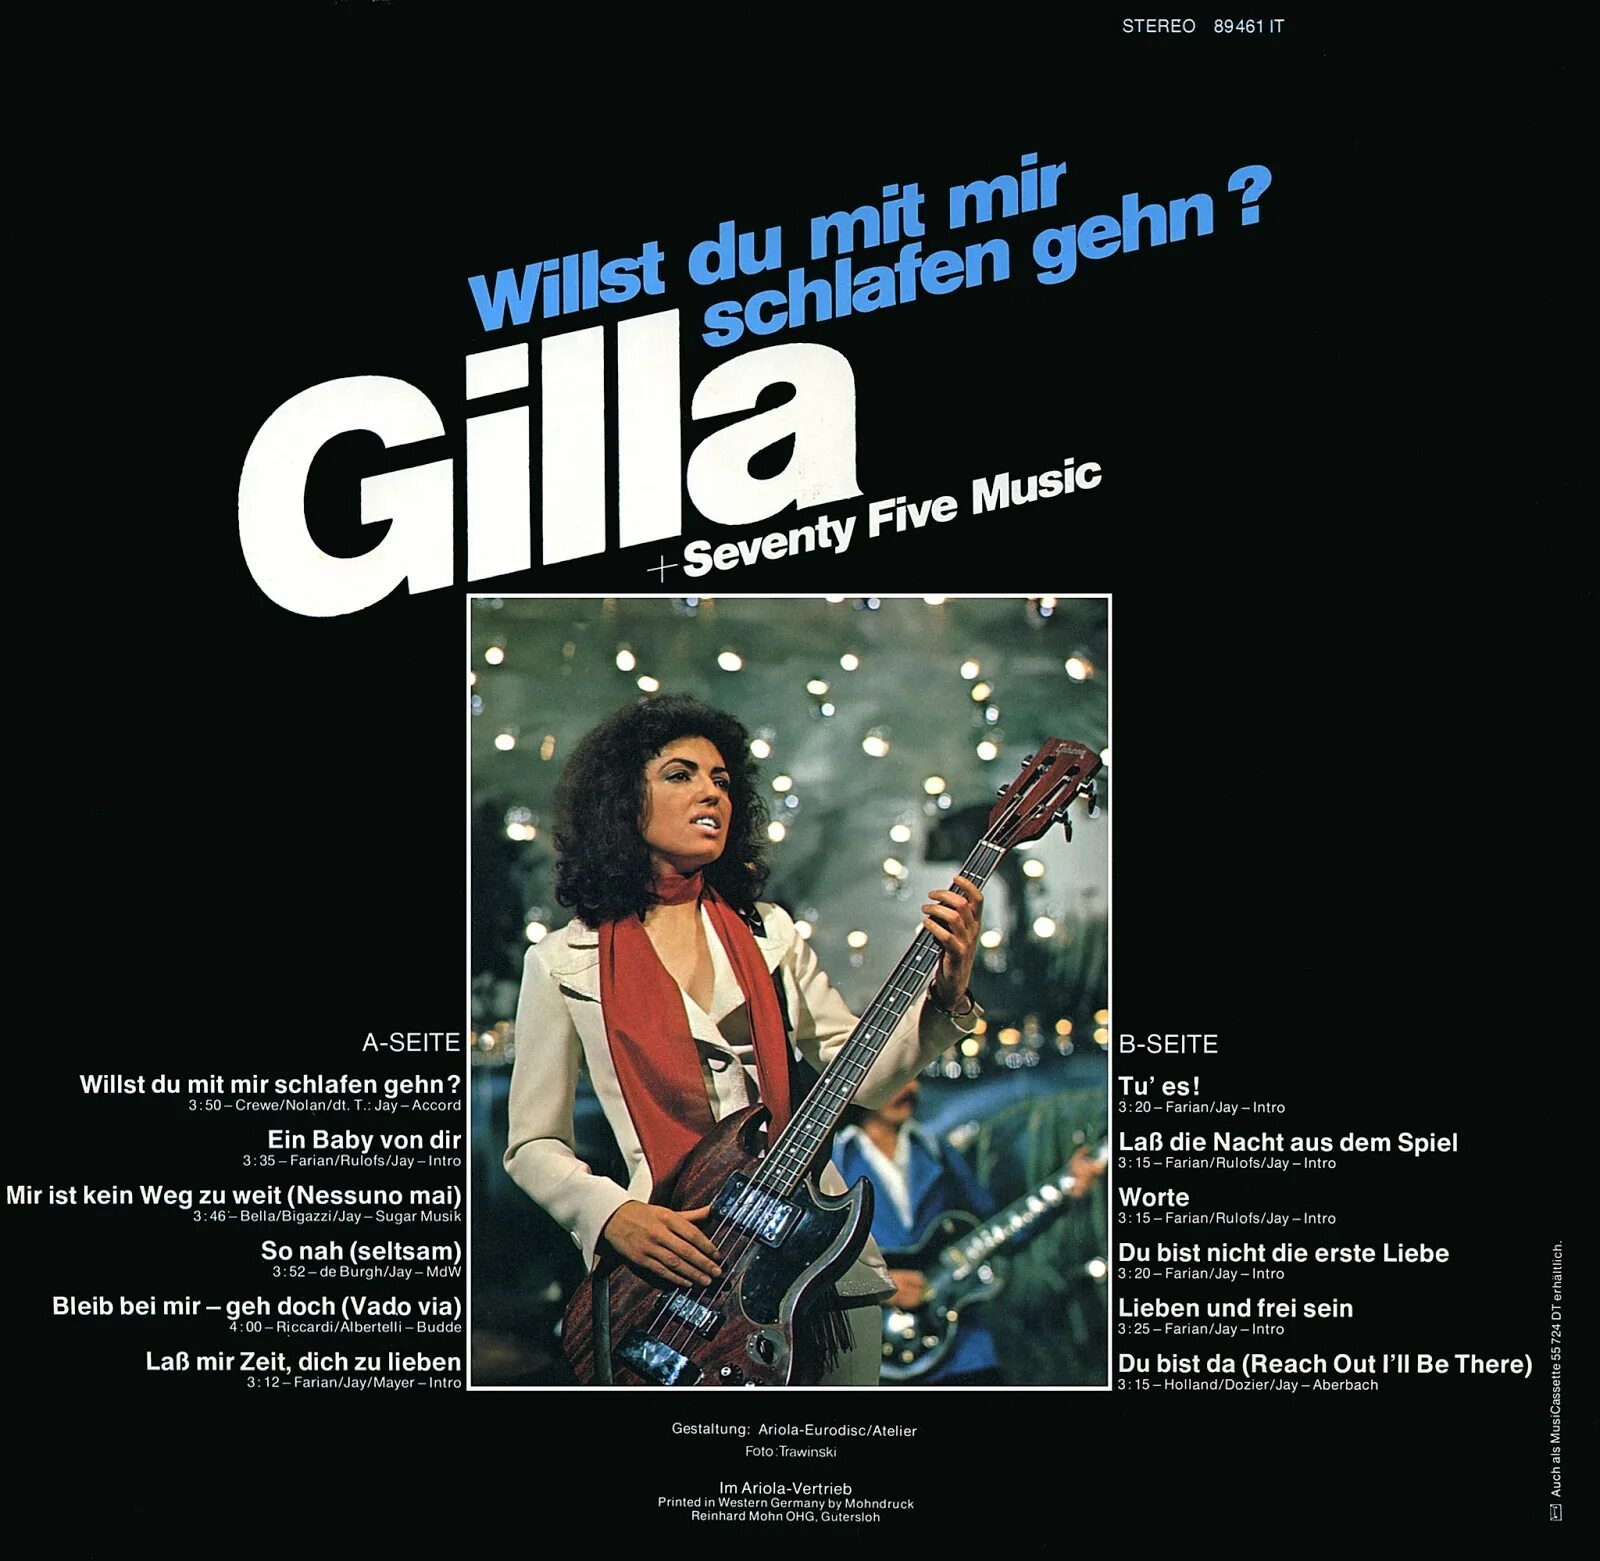 Gilla. Gilla Johnny обложка альбома. Gilla "zieh mich aus". Gilla фотографии.